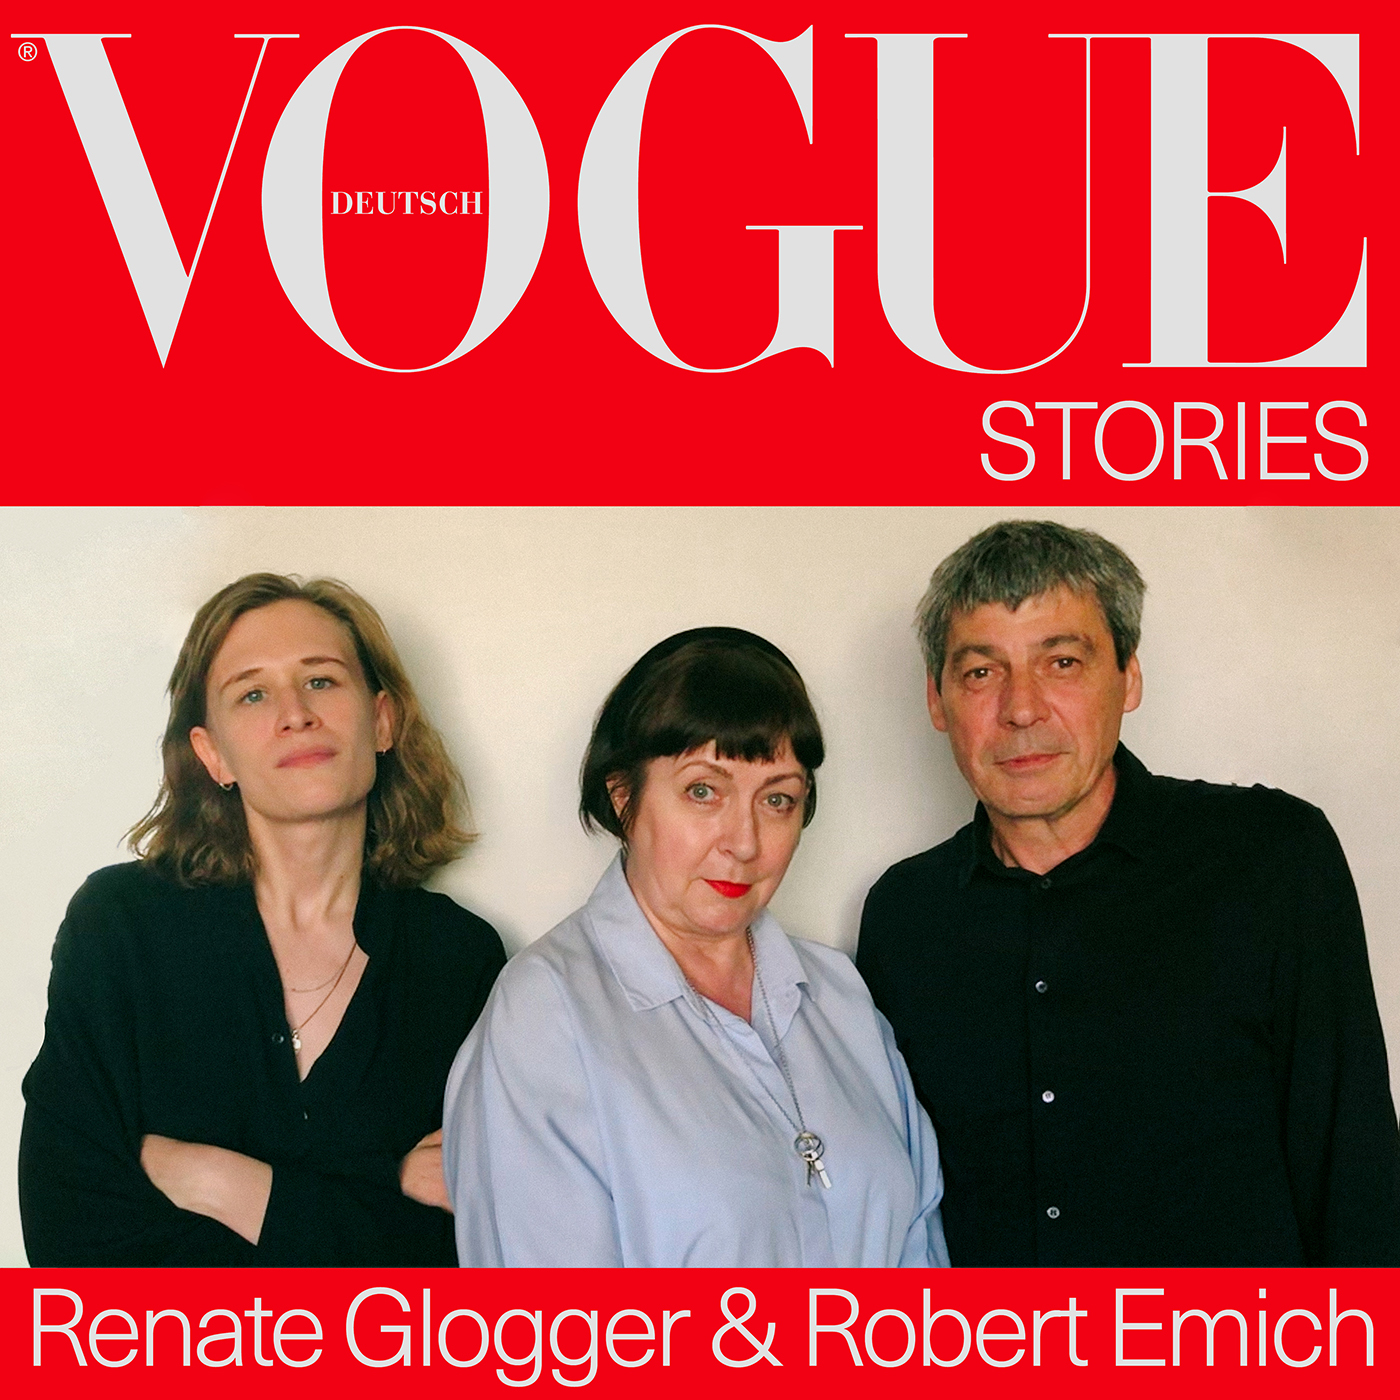 Robert Emich & Renate Glogger, wie ist es seit 30 Jahren bei der deutschen Vogue zu arbeiten?